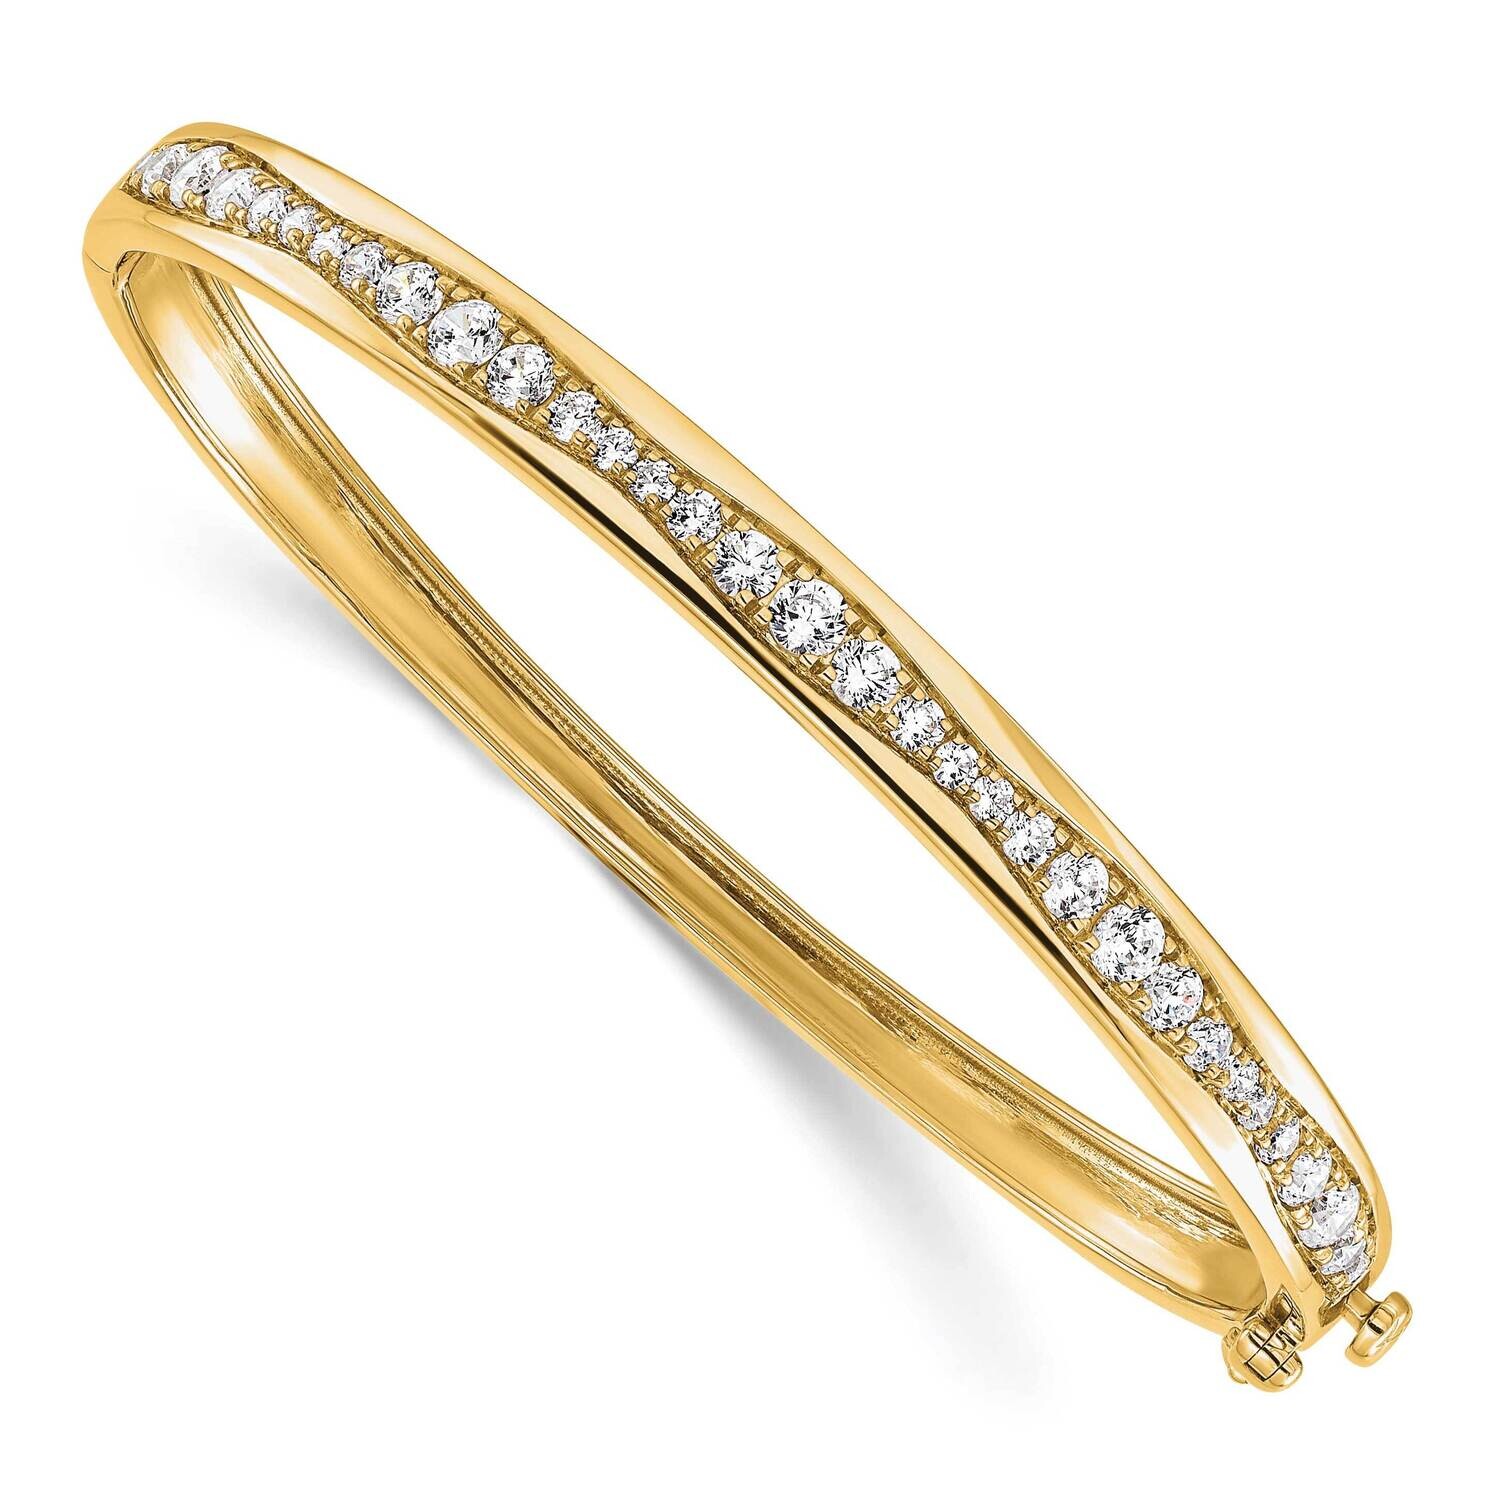 True Origin Diamond Vs/Si D E F Bangle Bracelet 6.75 Inch 14k Gold BM9378-180-YLD